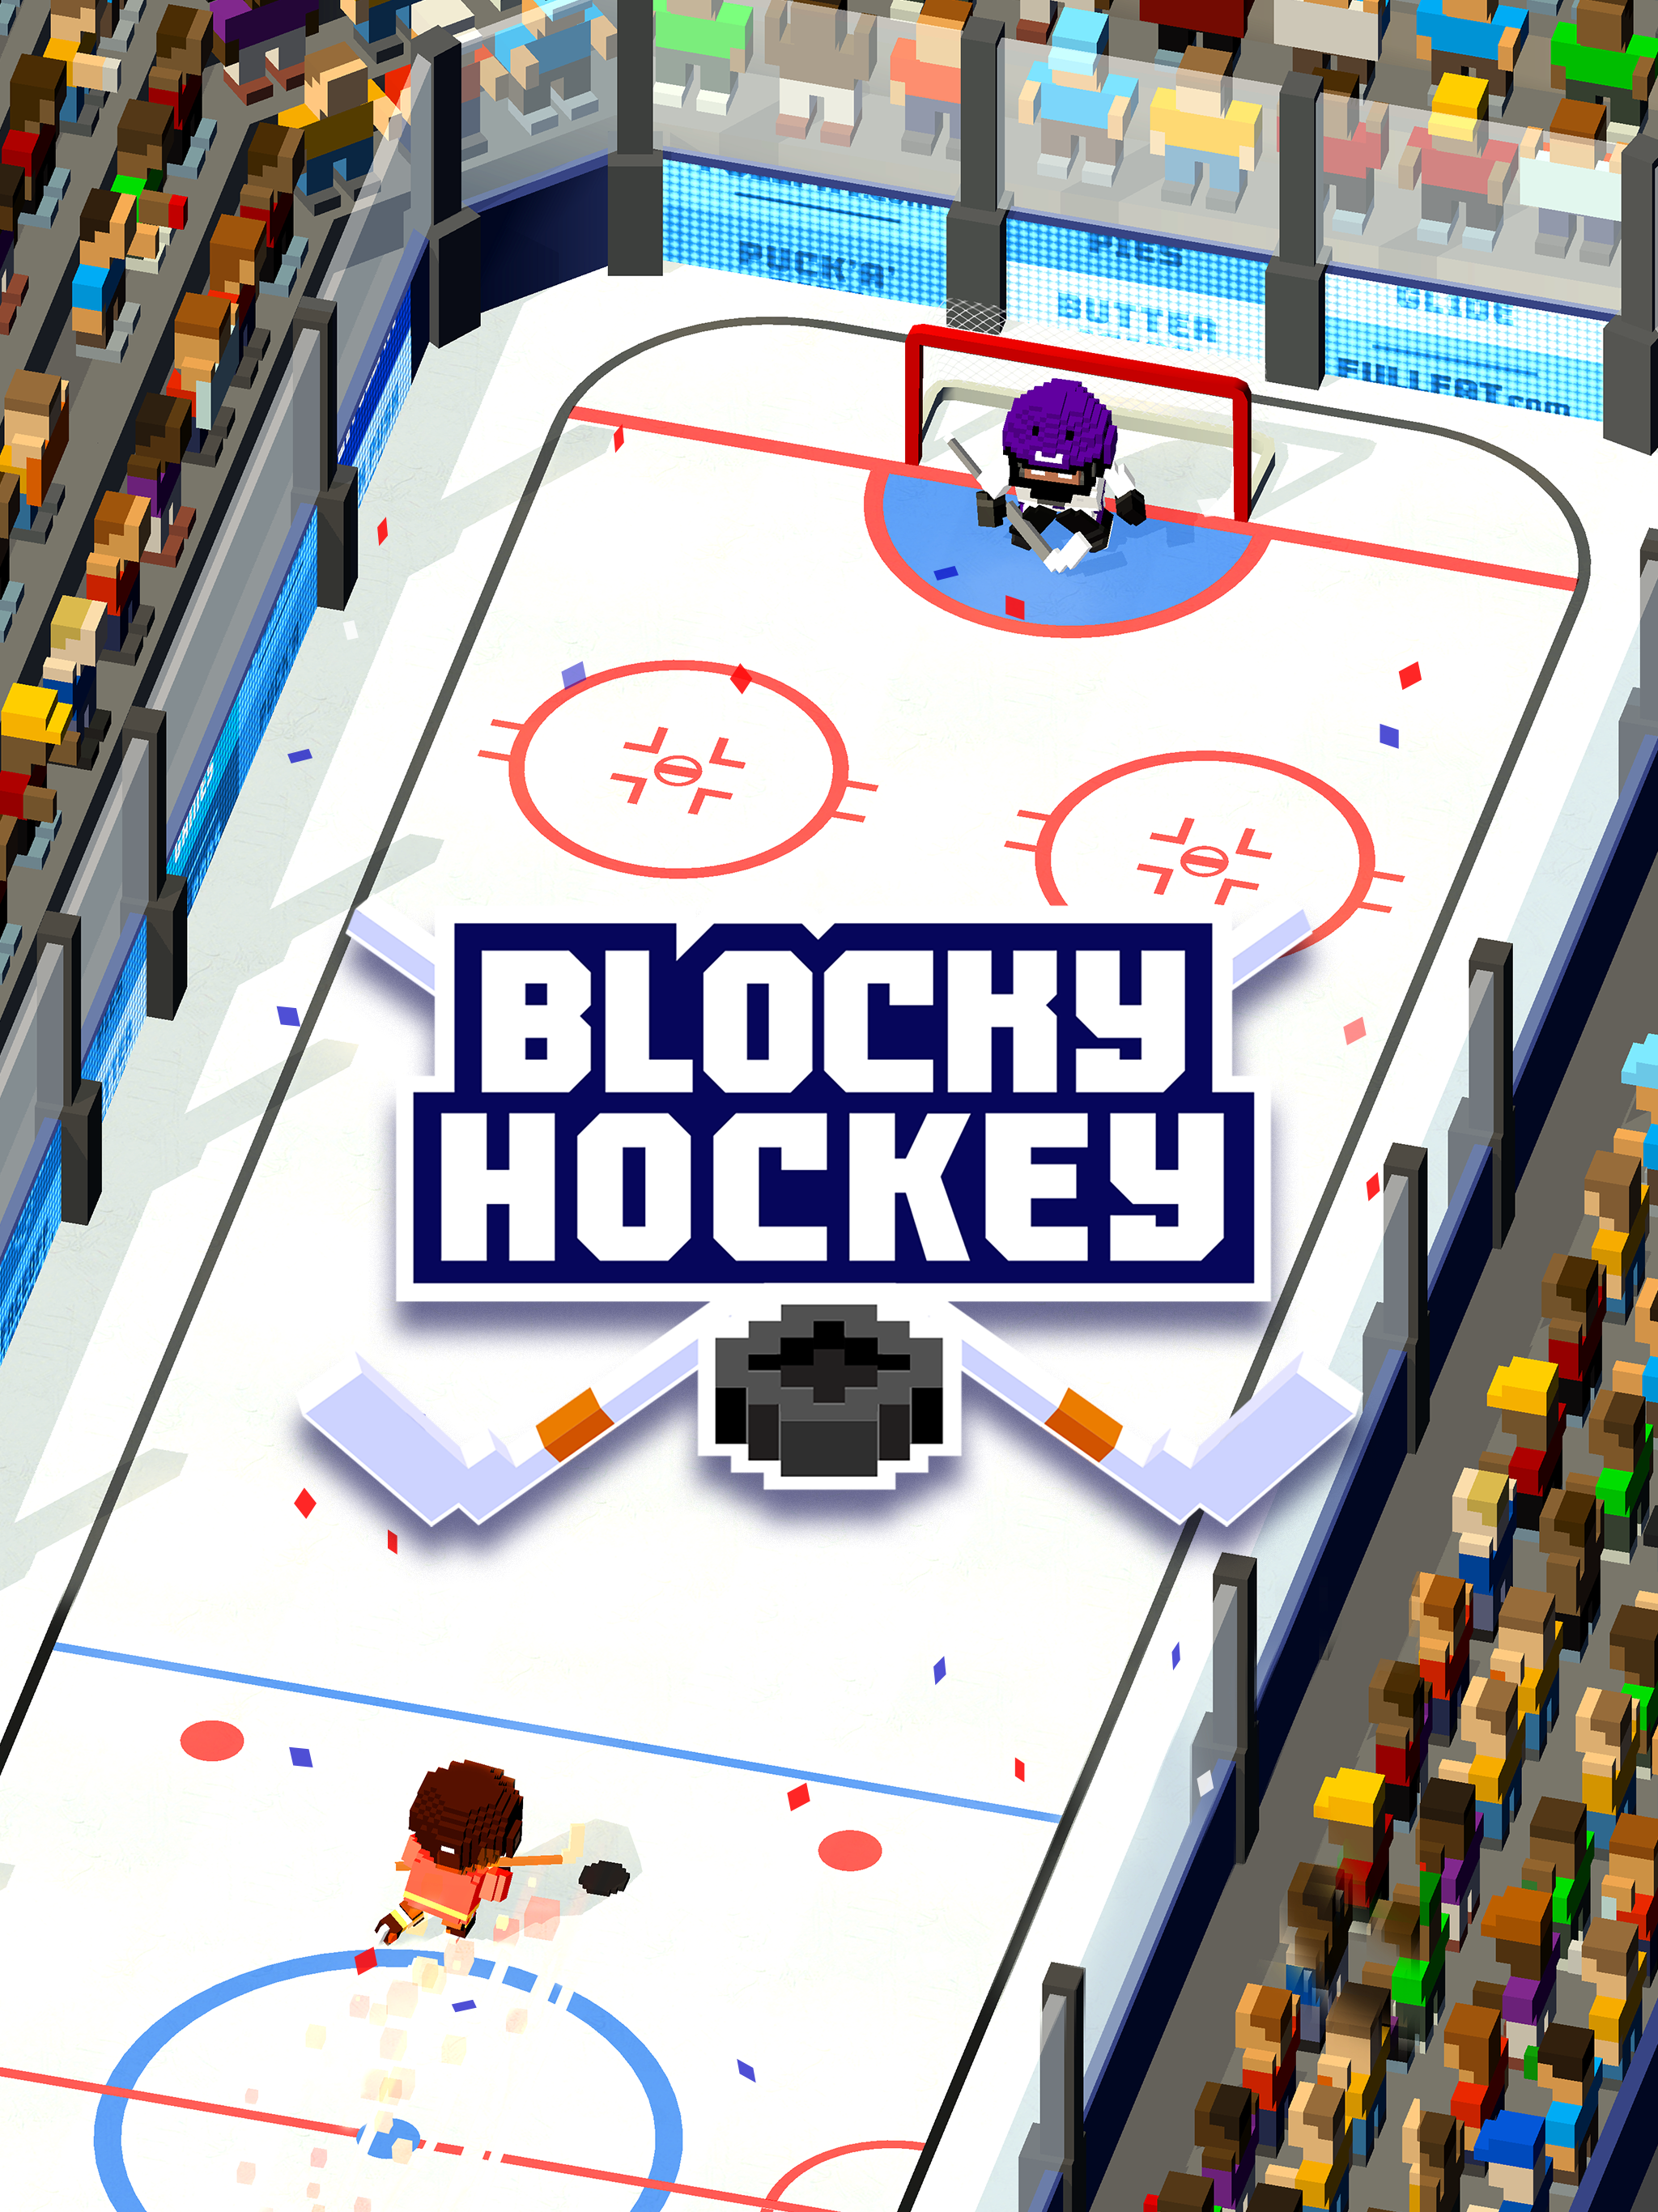 Blocky Hockeyのキャプチャ